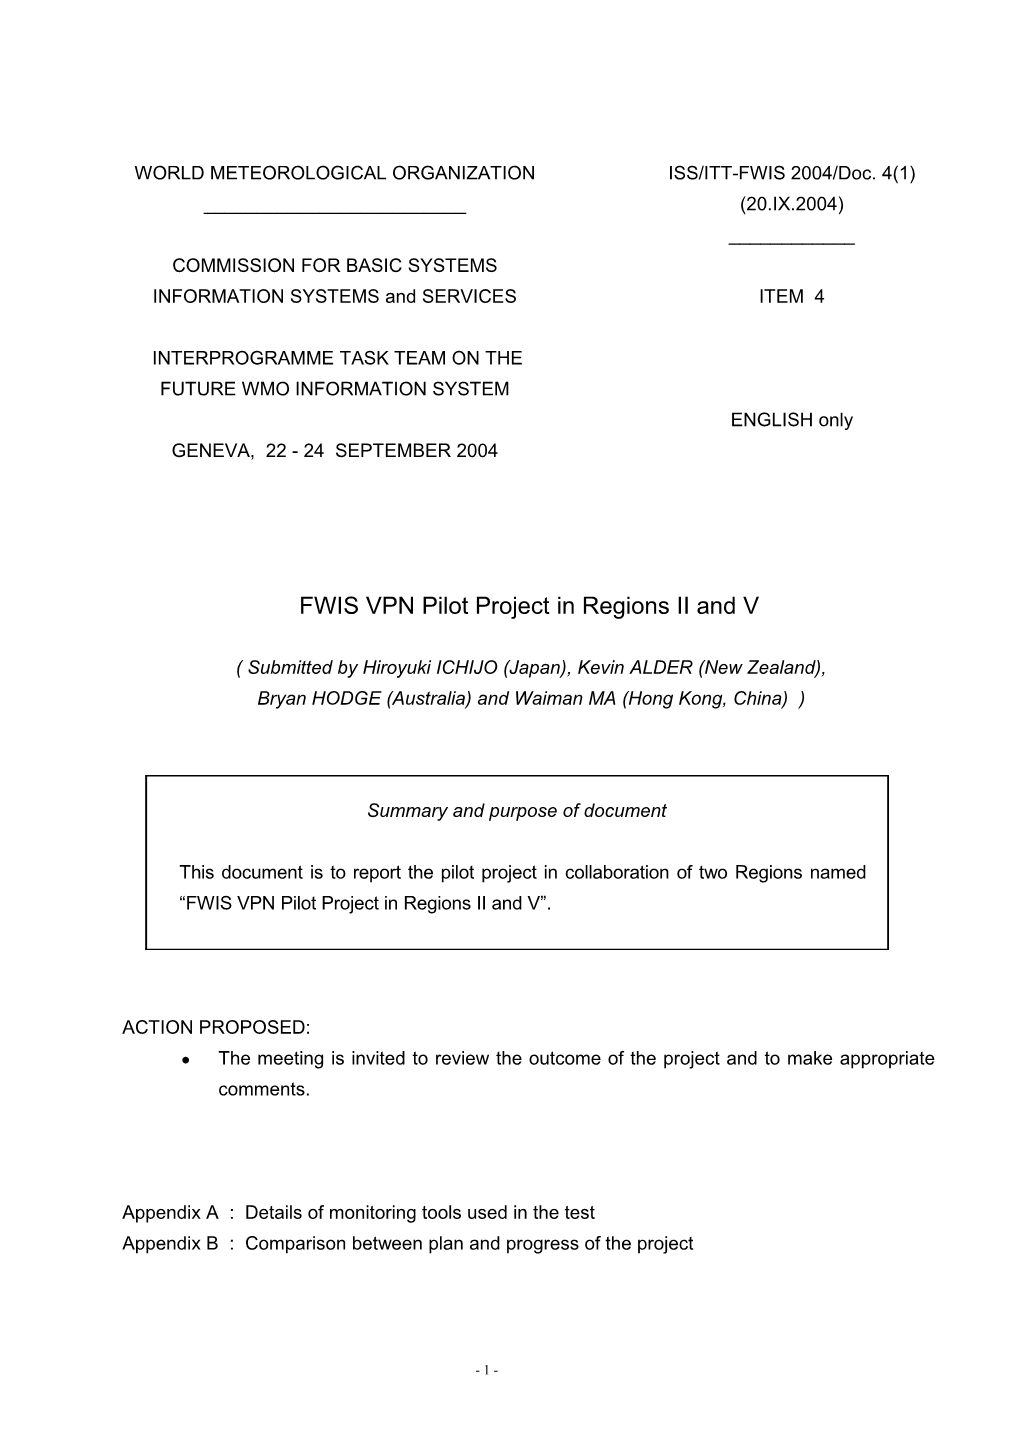 FWIS VPN Pilot Project in Ras II & V